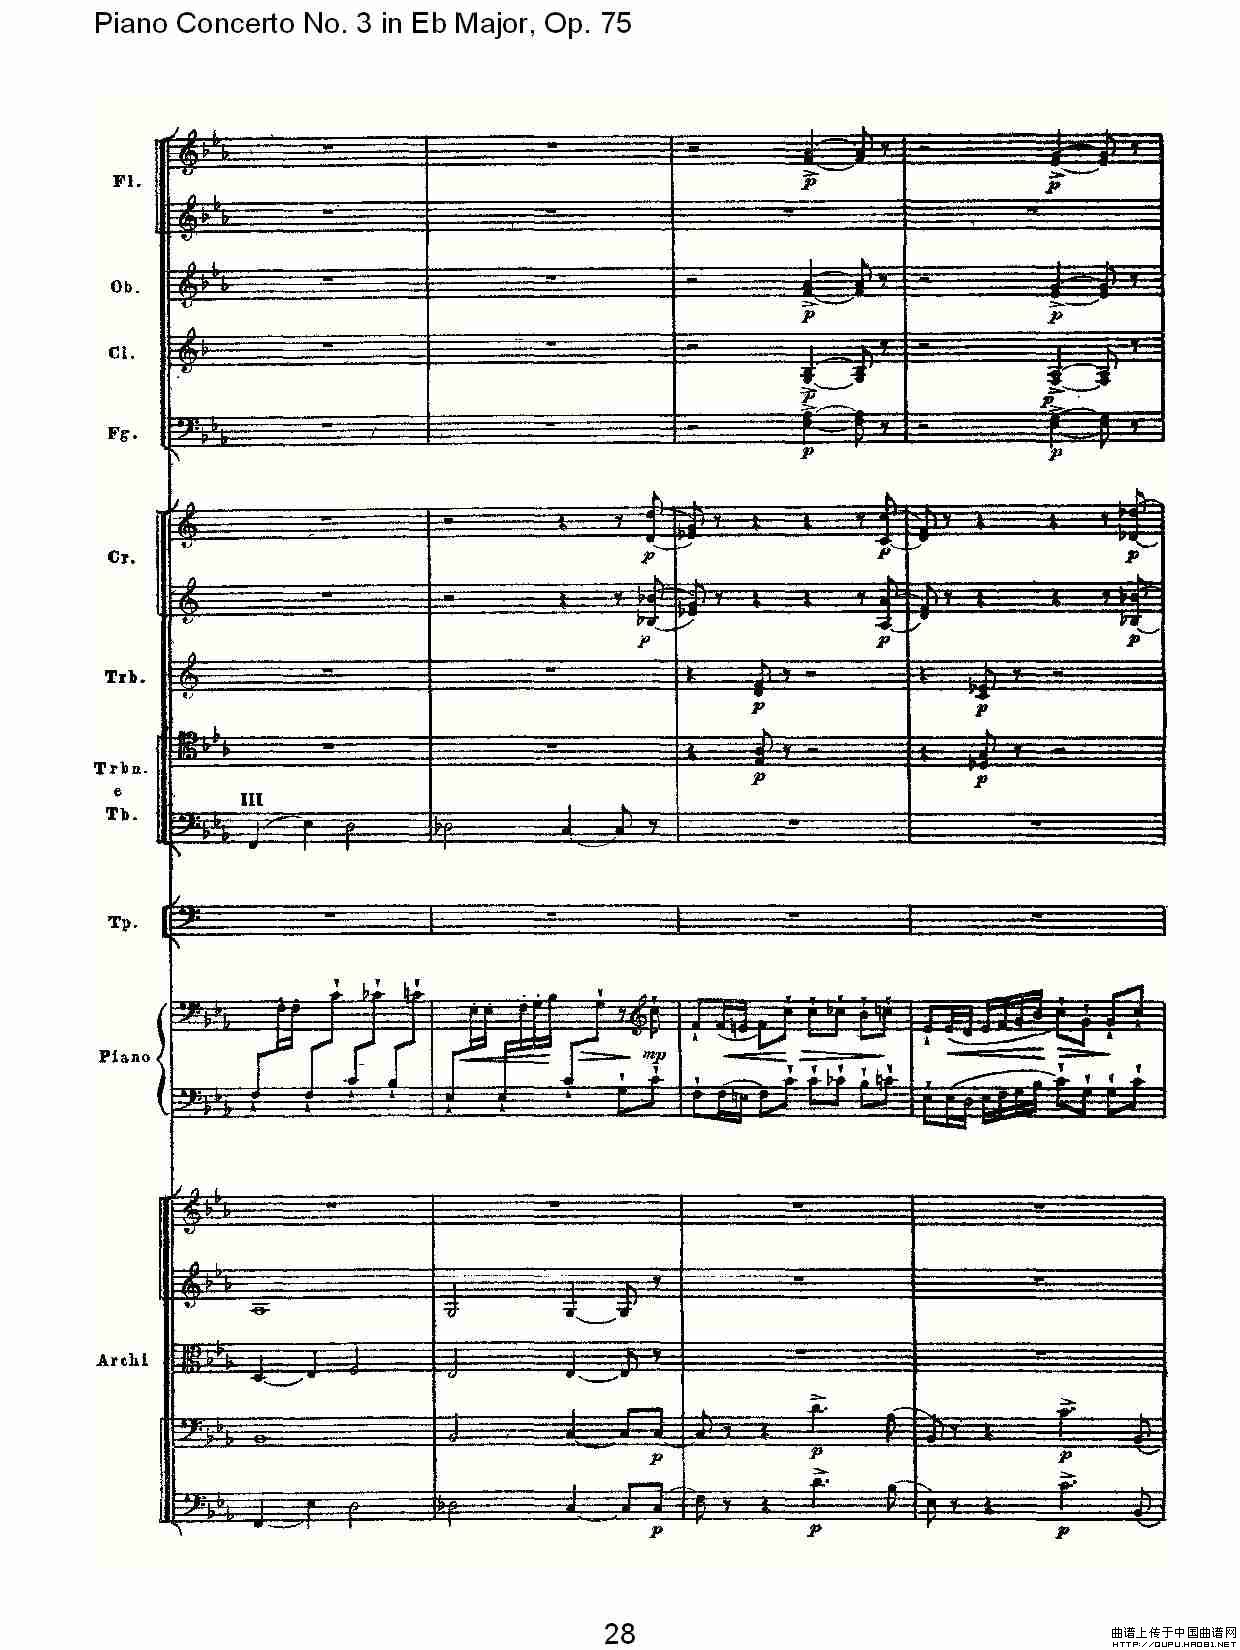 Piano Concerto No.3 in Eb Major, Op.75（Eb大调第三钢琴协奏）(1)_原文件名：Piano Concerto No.3 in Eb Major, Op.7529.jpg